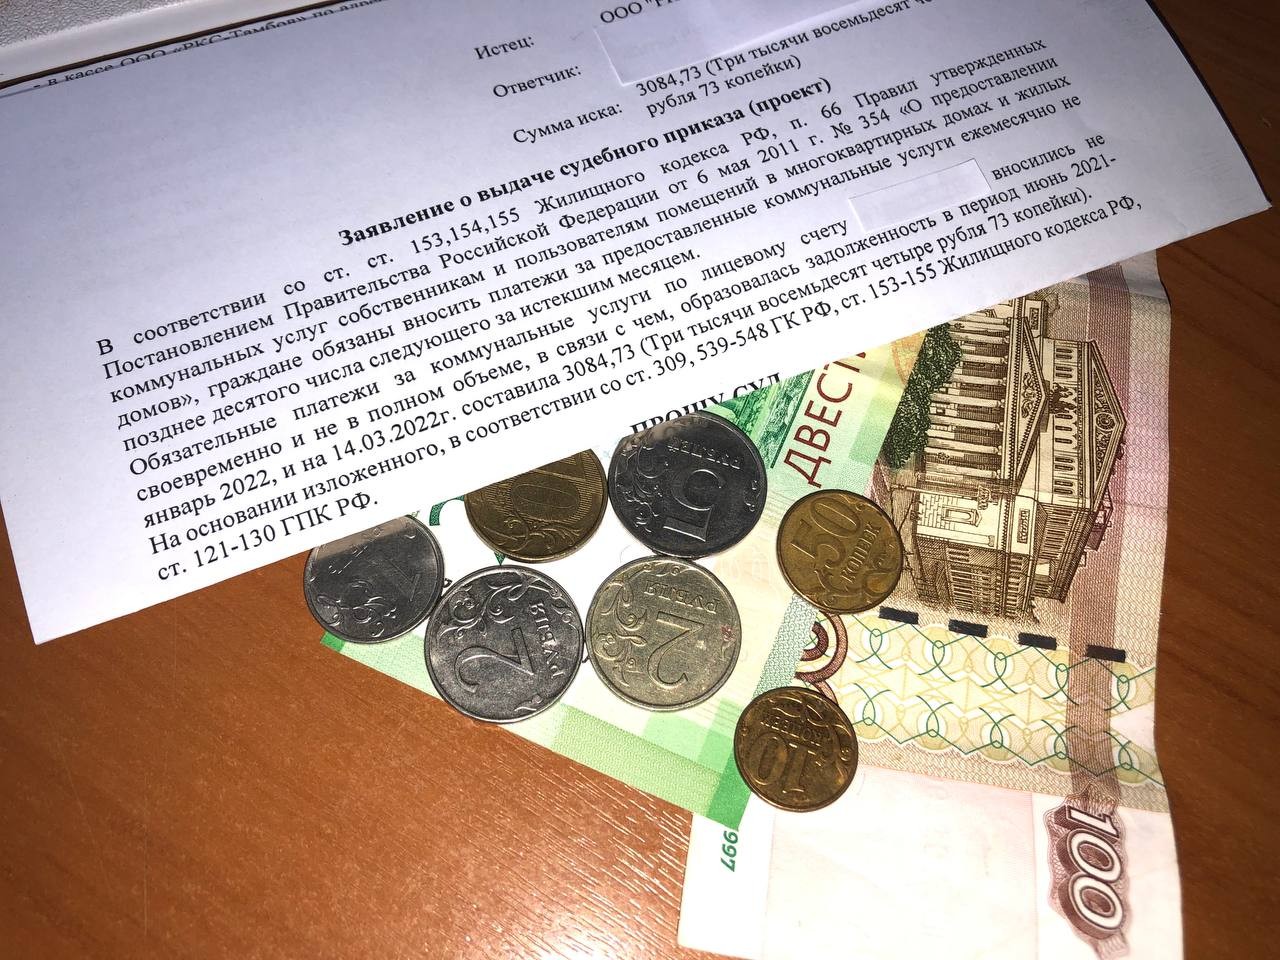 Оплата долгов рублями